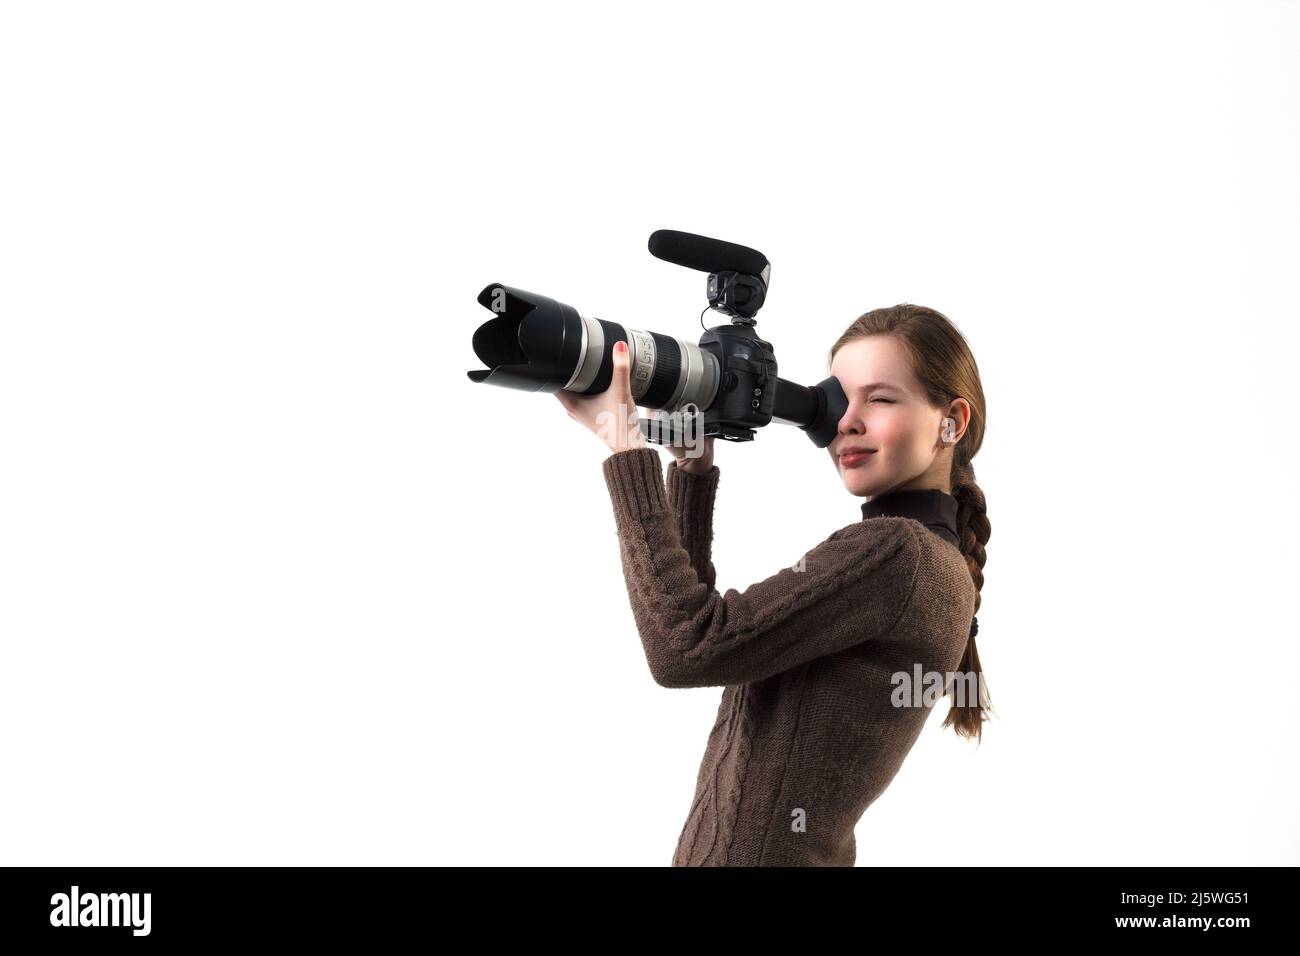 La belle photographe fille avec un appareil photo reflex numérique professionnel posé sur un fond blanc en studio. Apprentissage photo, étude, concept de formation Banque D'Images